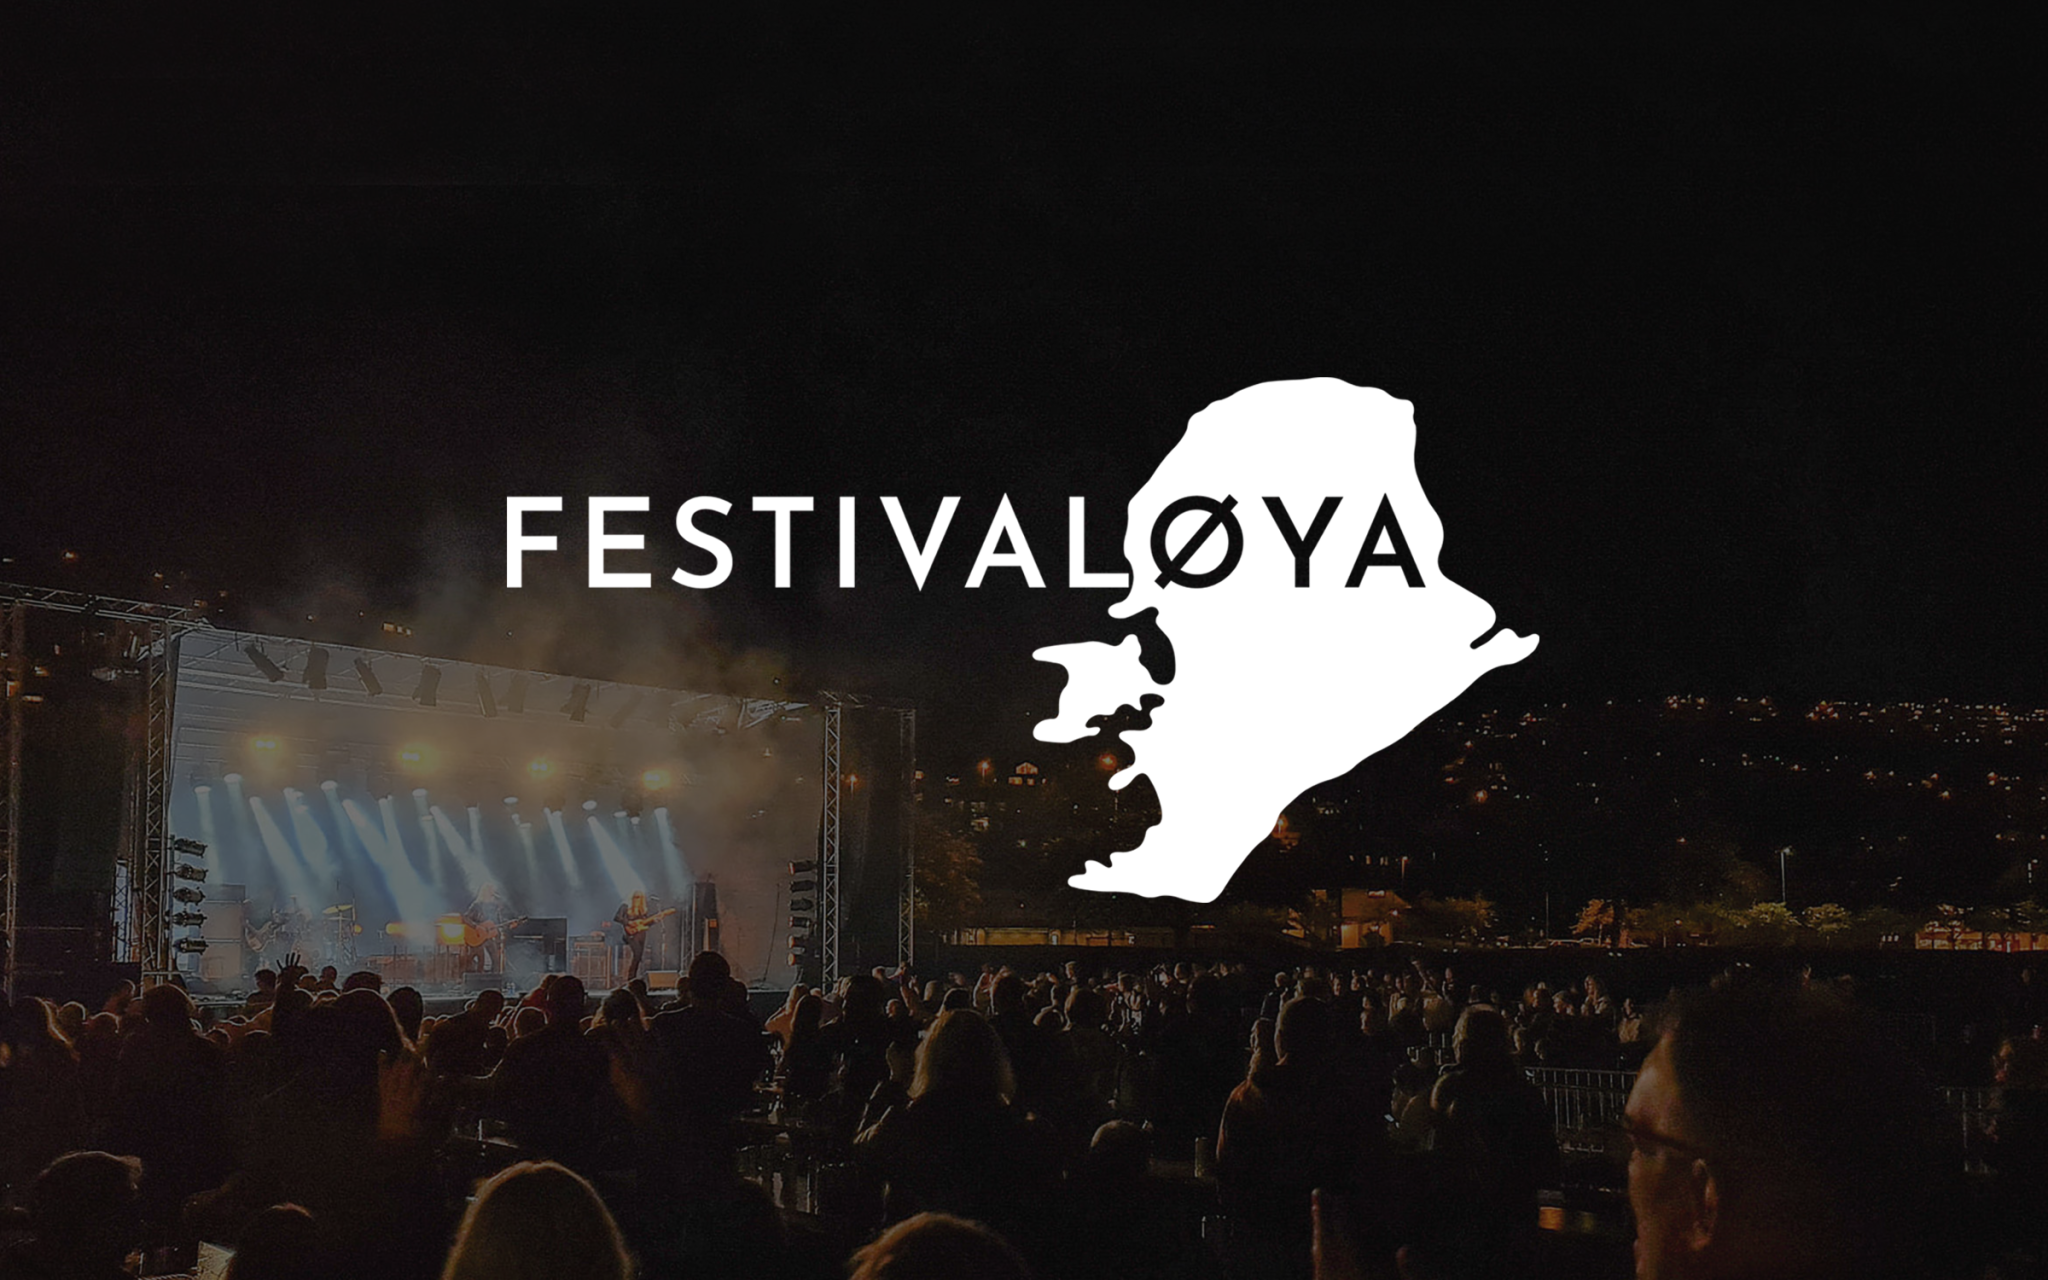 logo til Festivaløya i hvitt på mørk bakgrunn